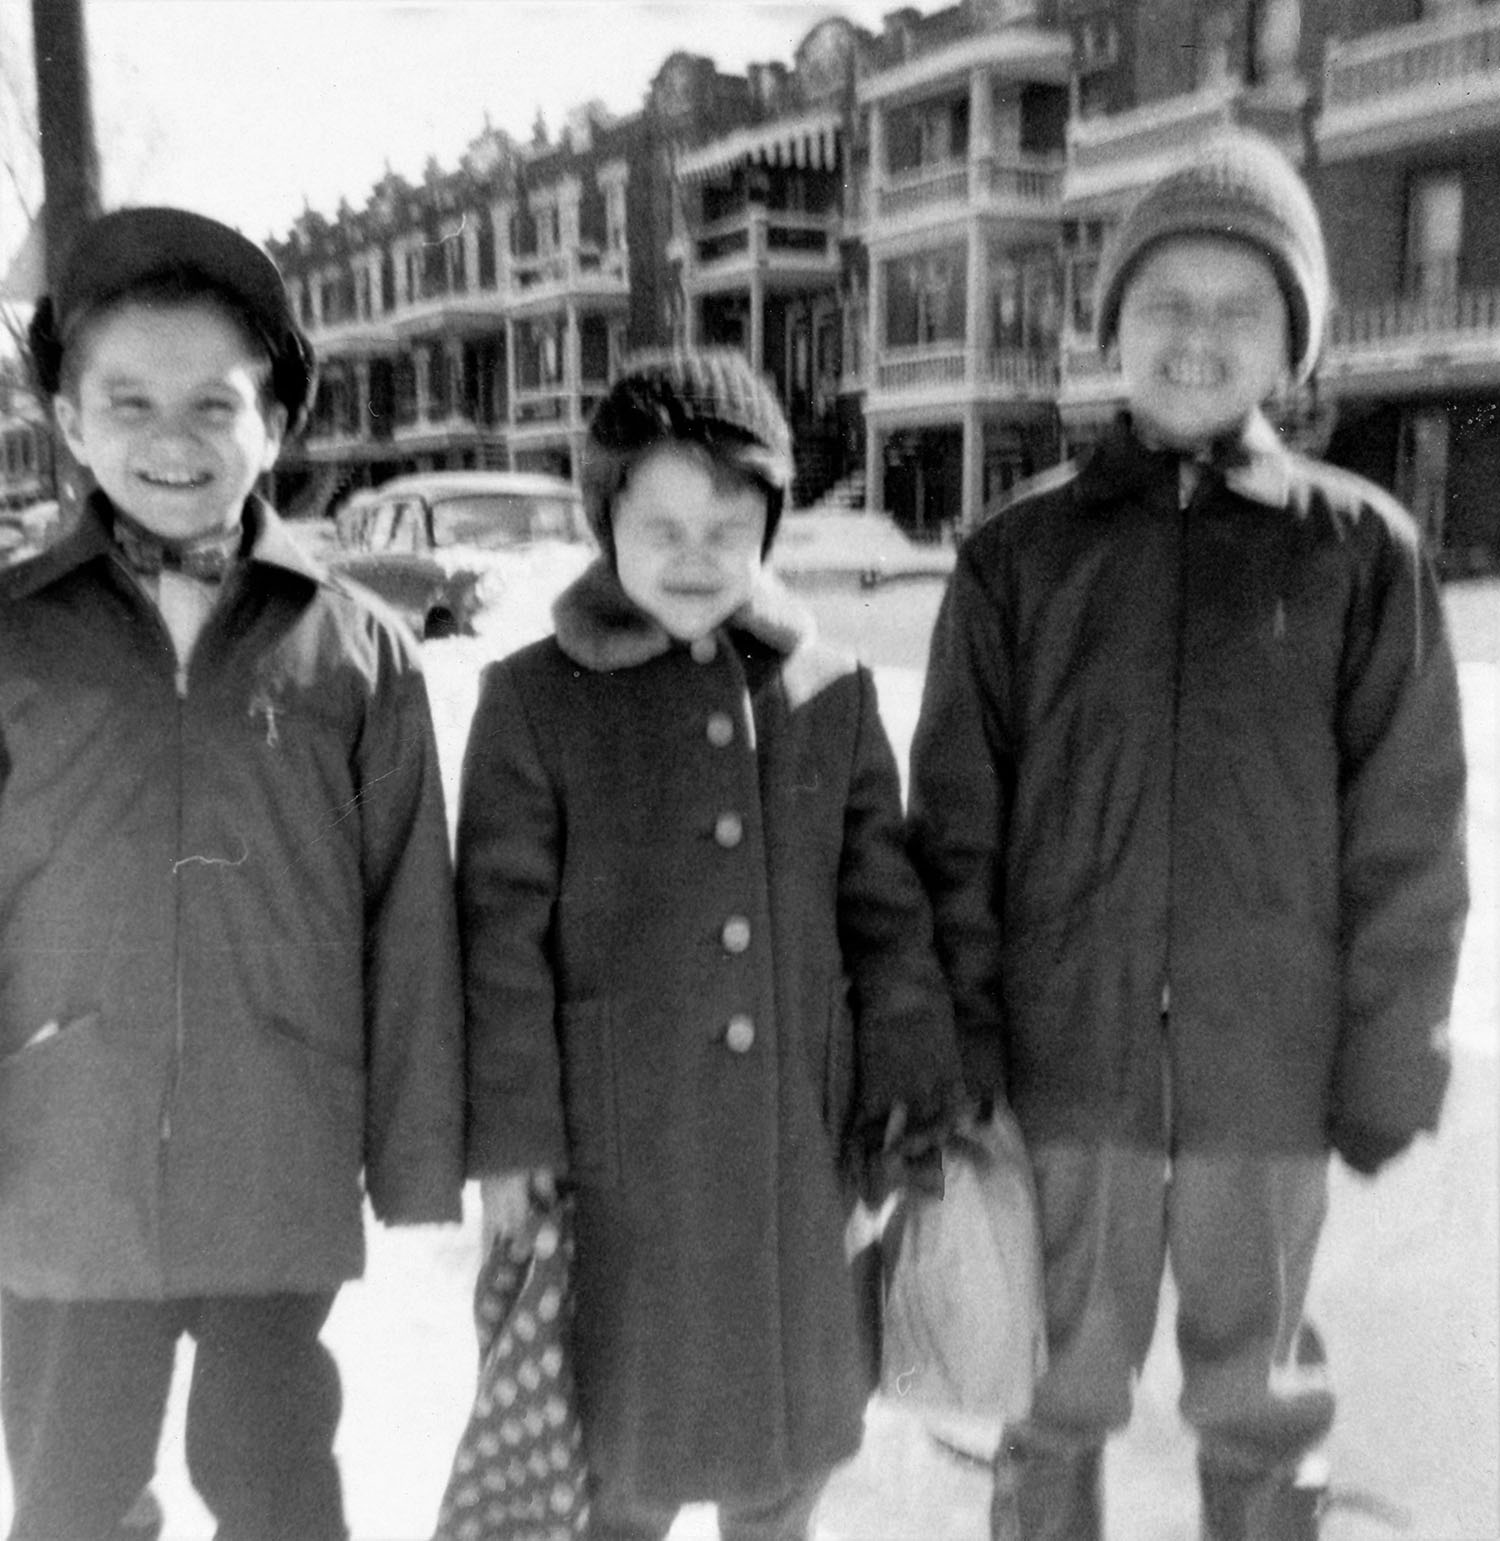 Fotografia de três crianças numa rua no inverno.